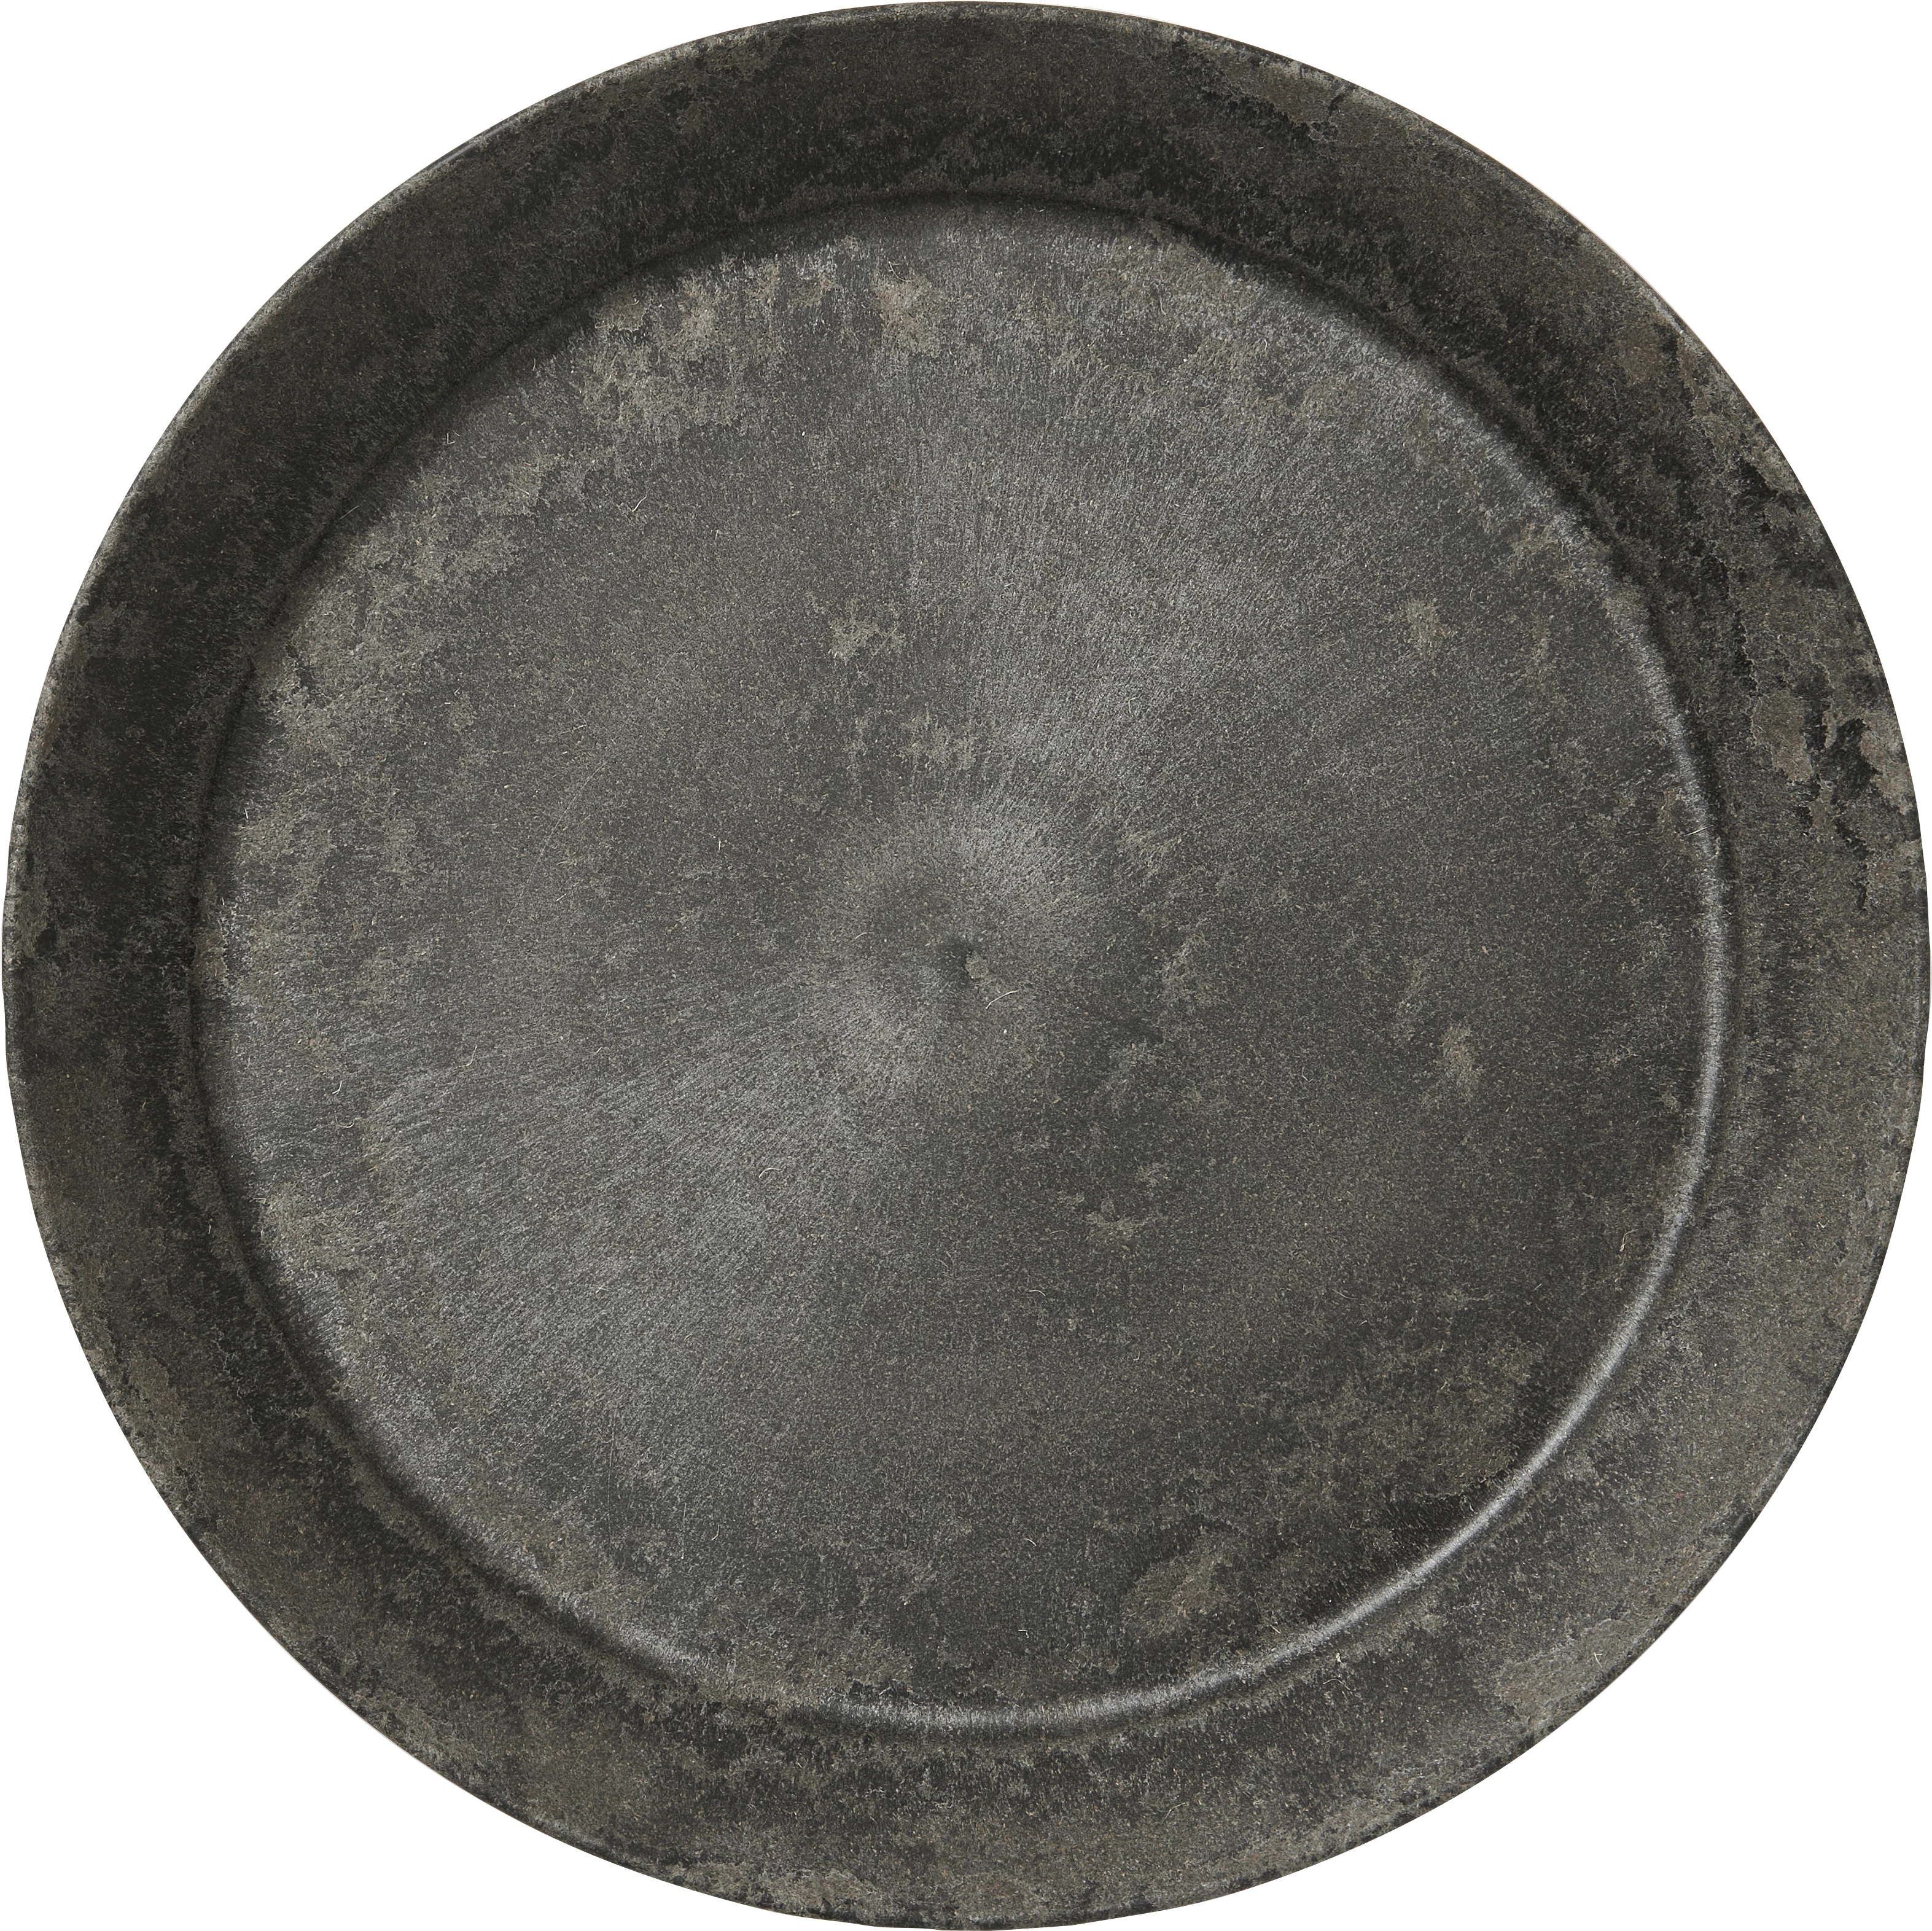 Luups tallerken uden fane, sort, ø25 cm